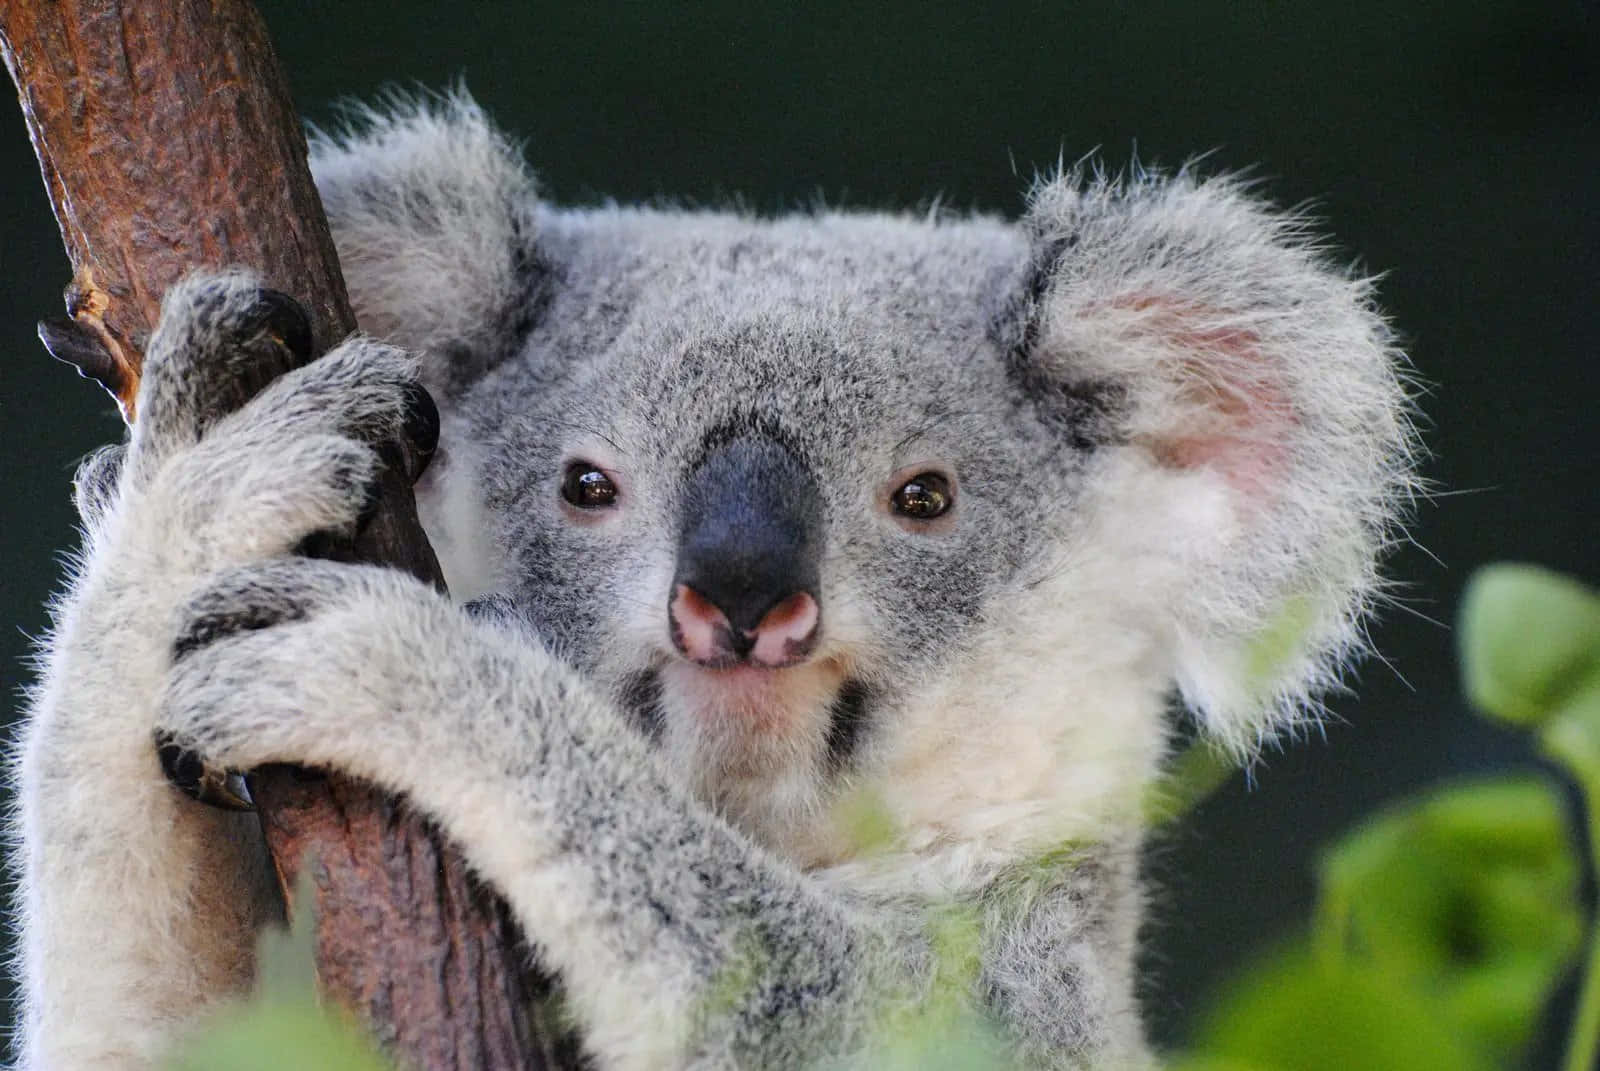 A cute Koala Bear nestled in a tree